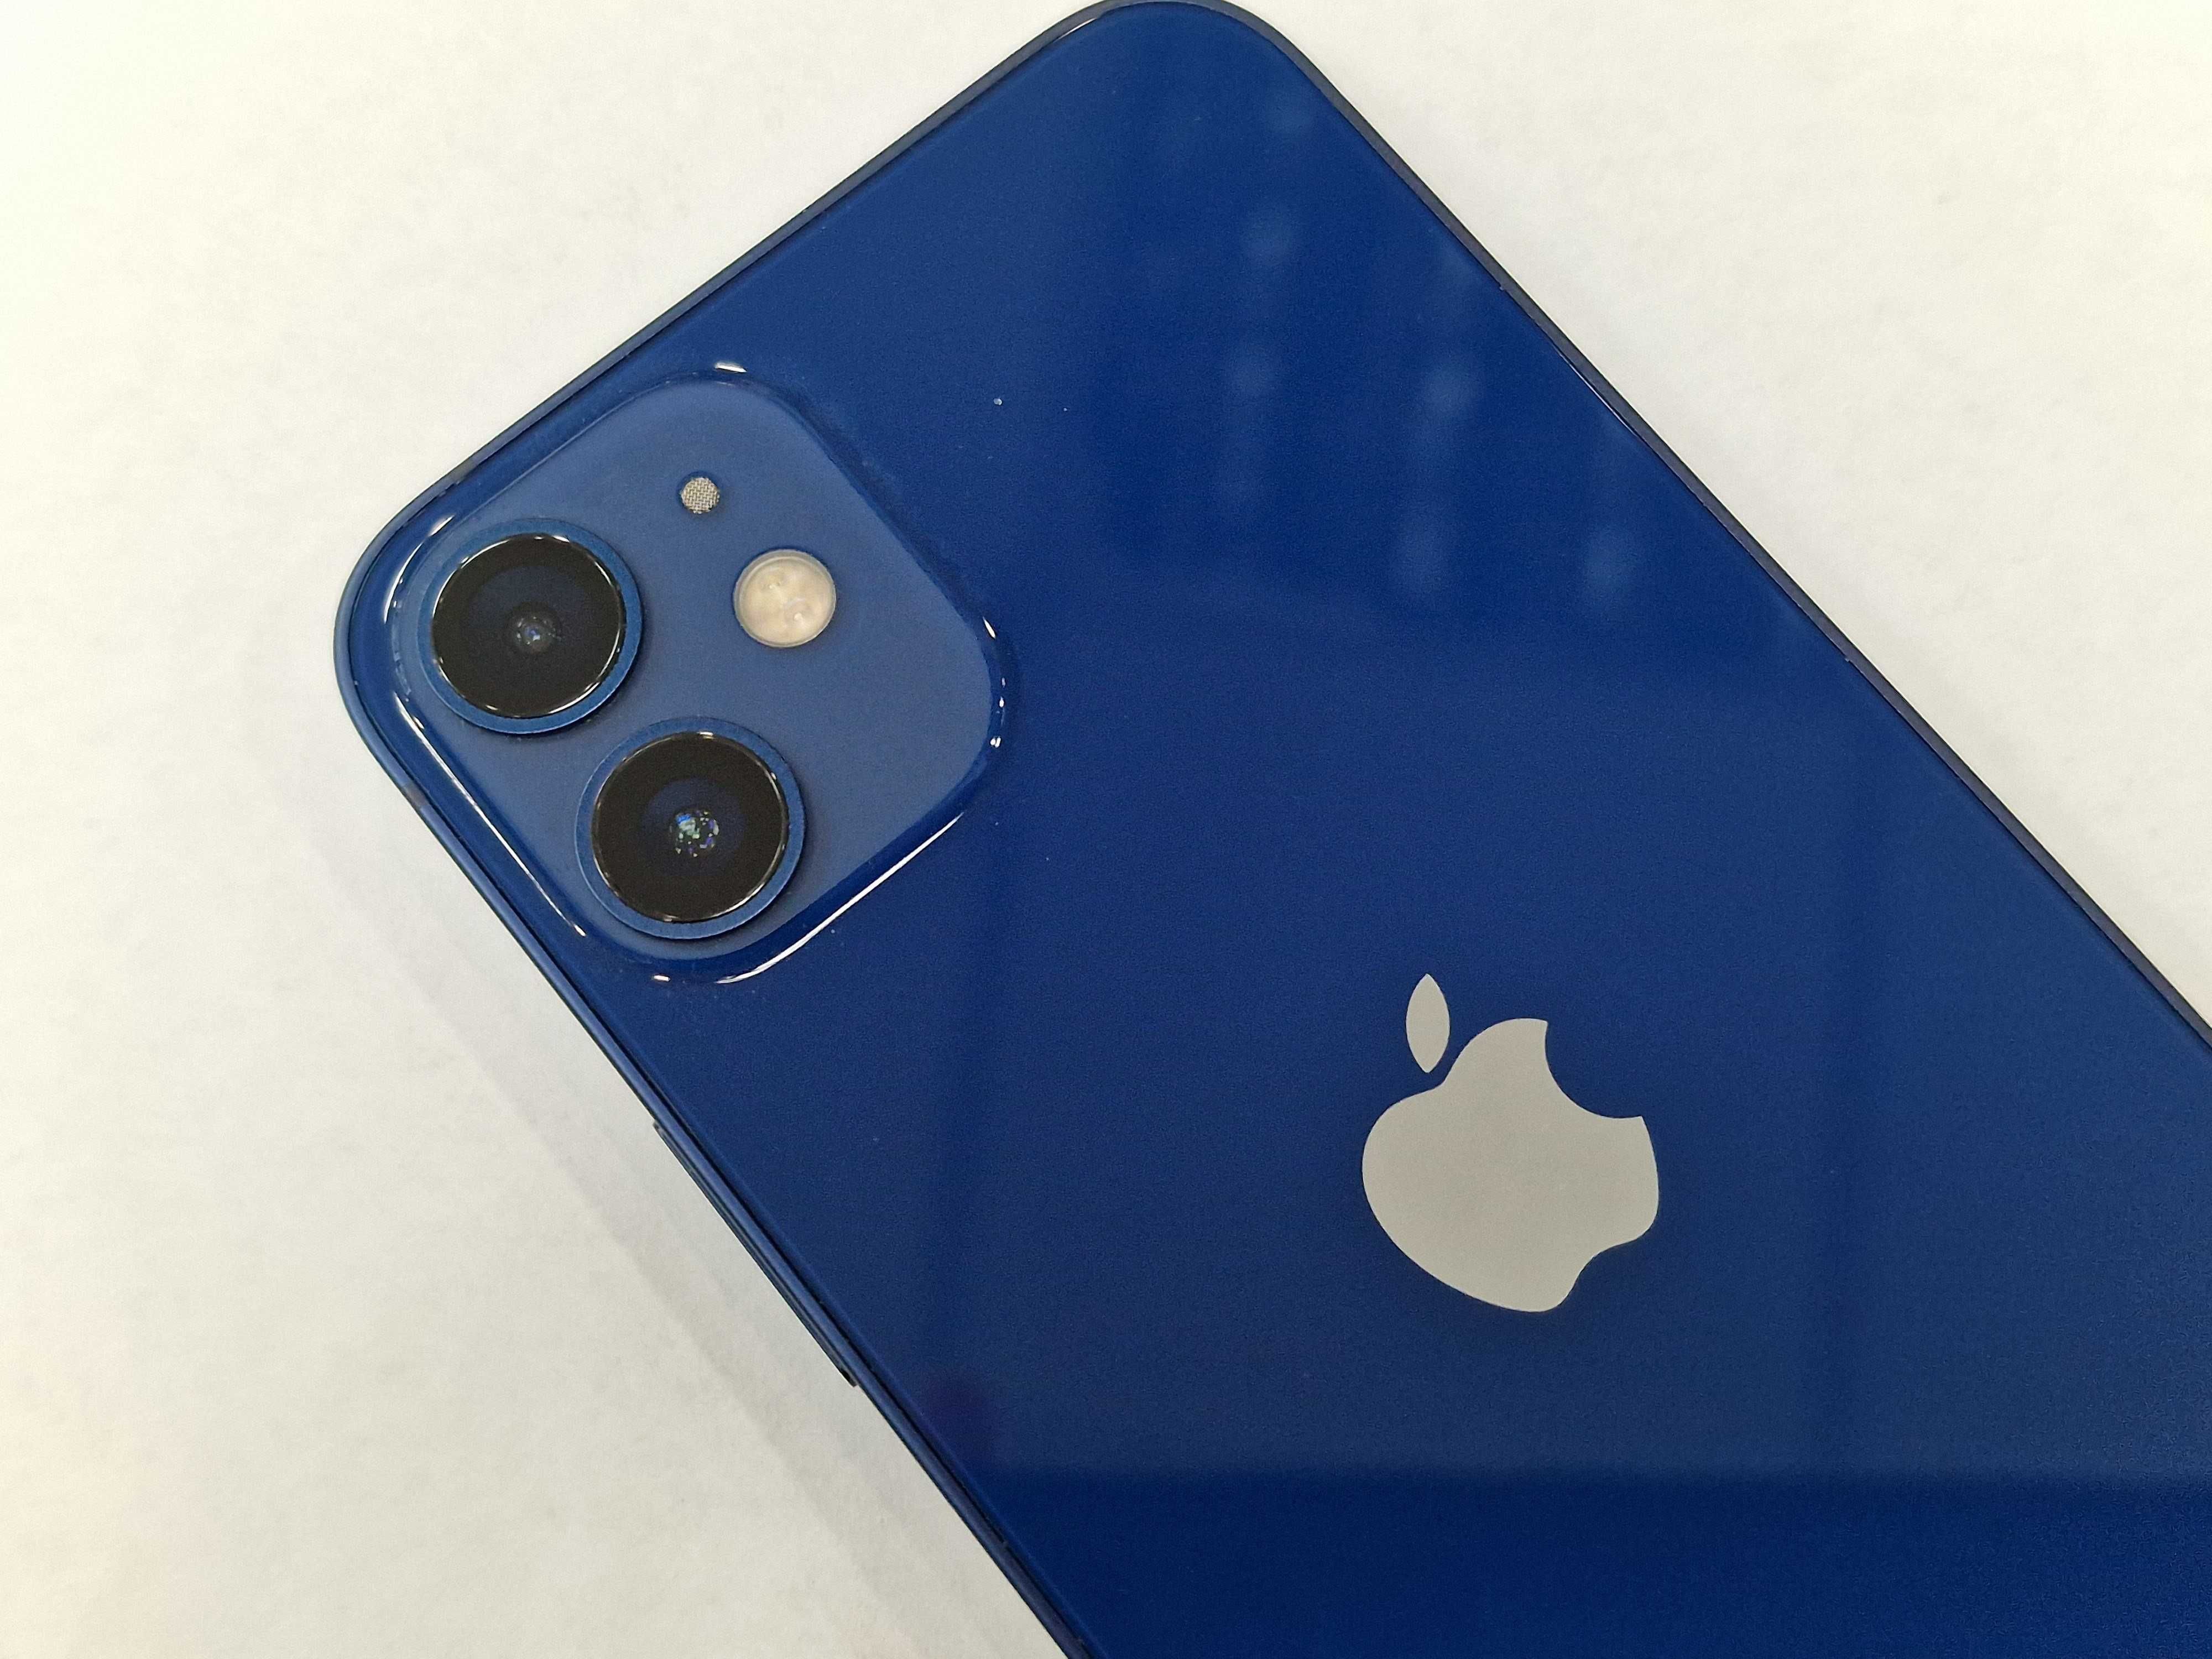 Iphone 12 Mini 64GB/ Blue/ Niebieski/ Bat 84%/ Grade B+/ Gwarancja